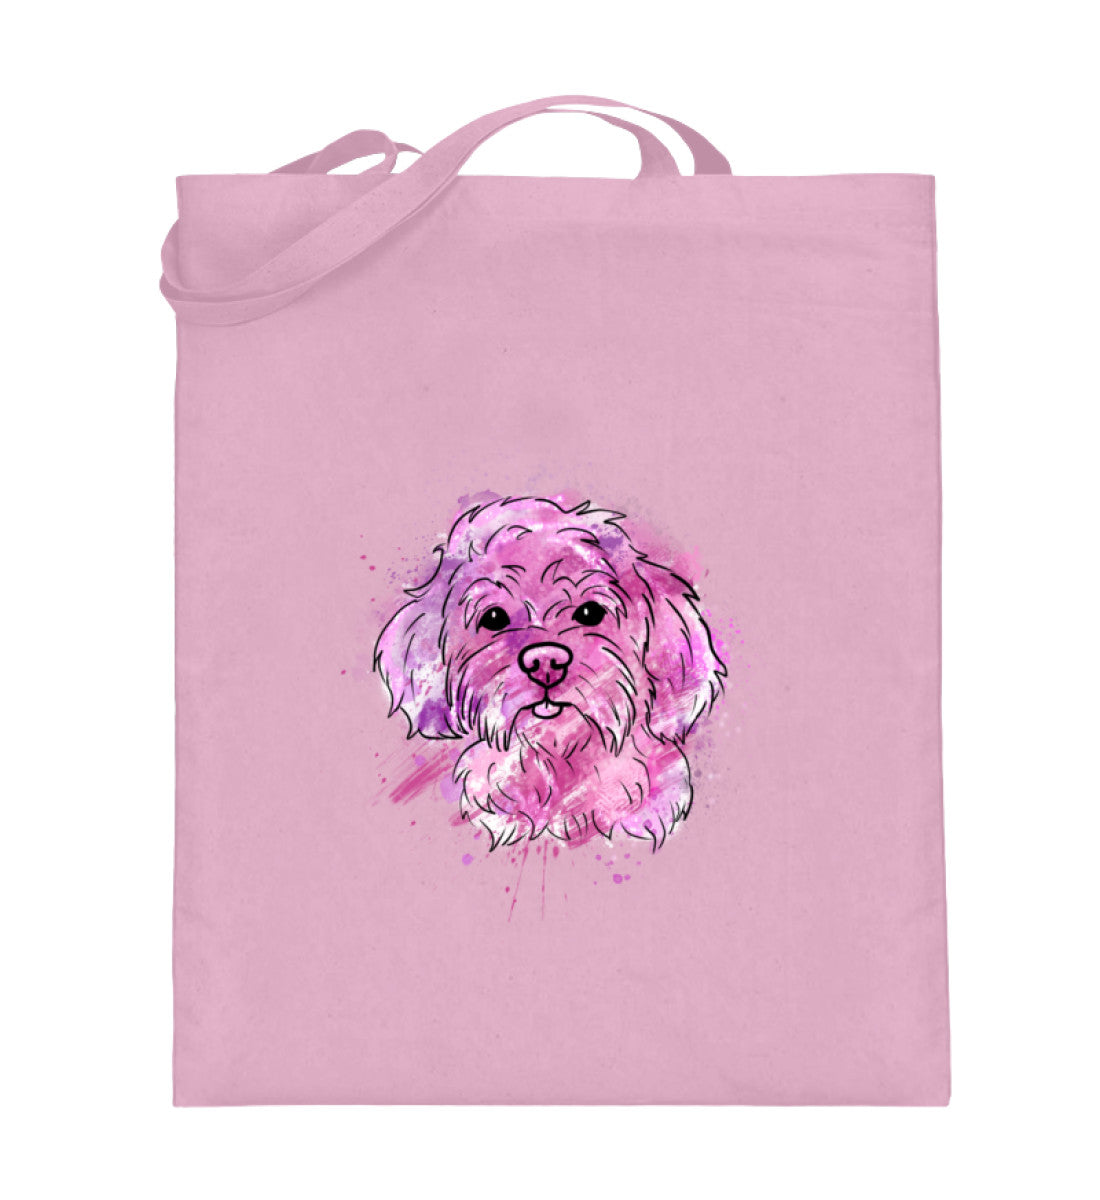 Jutebeutel bedruckt, süßer Hund in Pastellfarben, Jutebeutel rosa